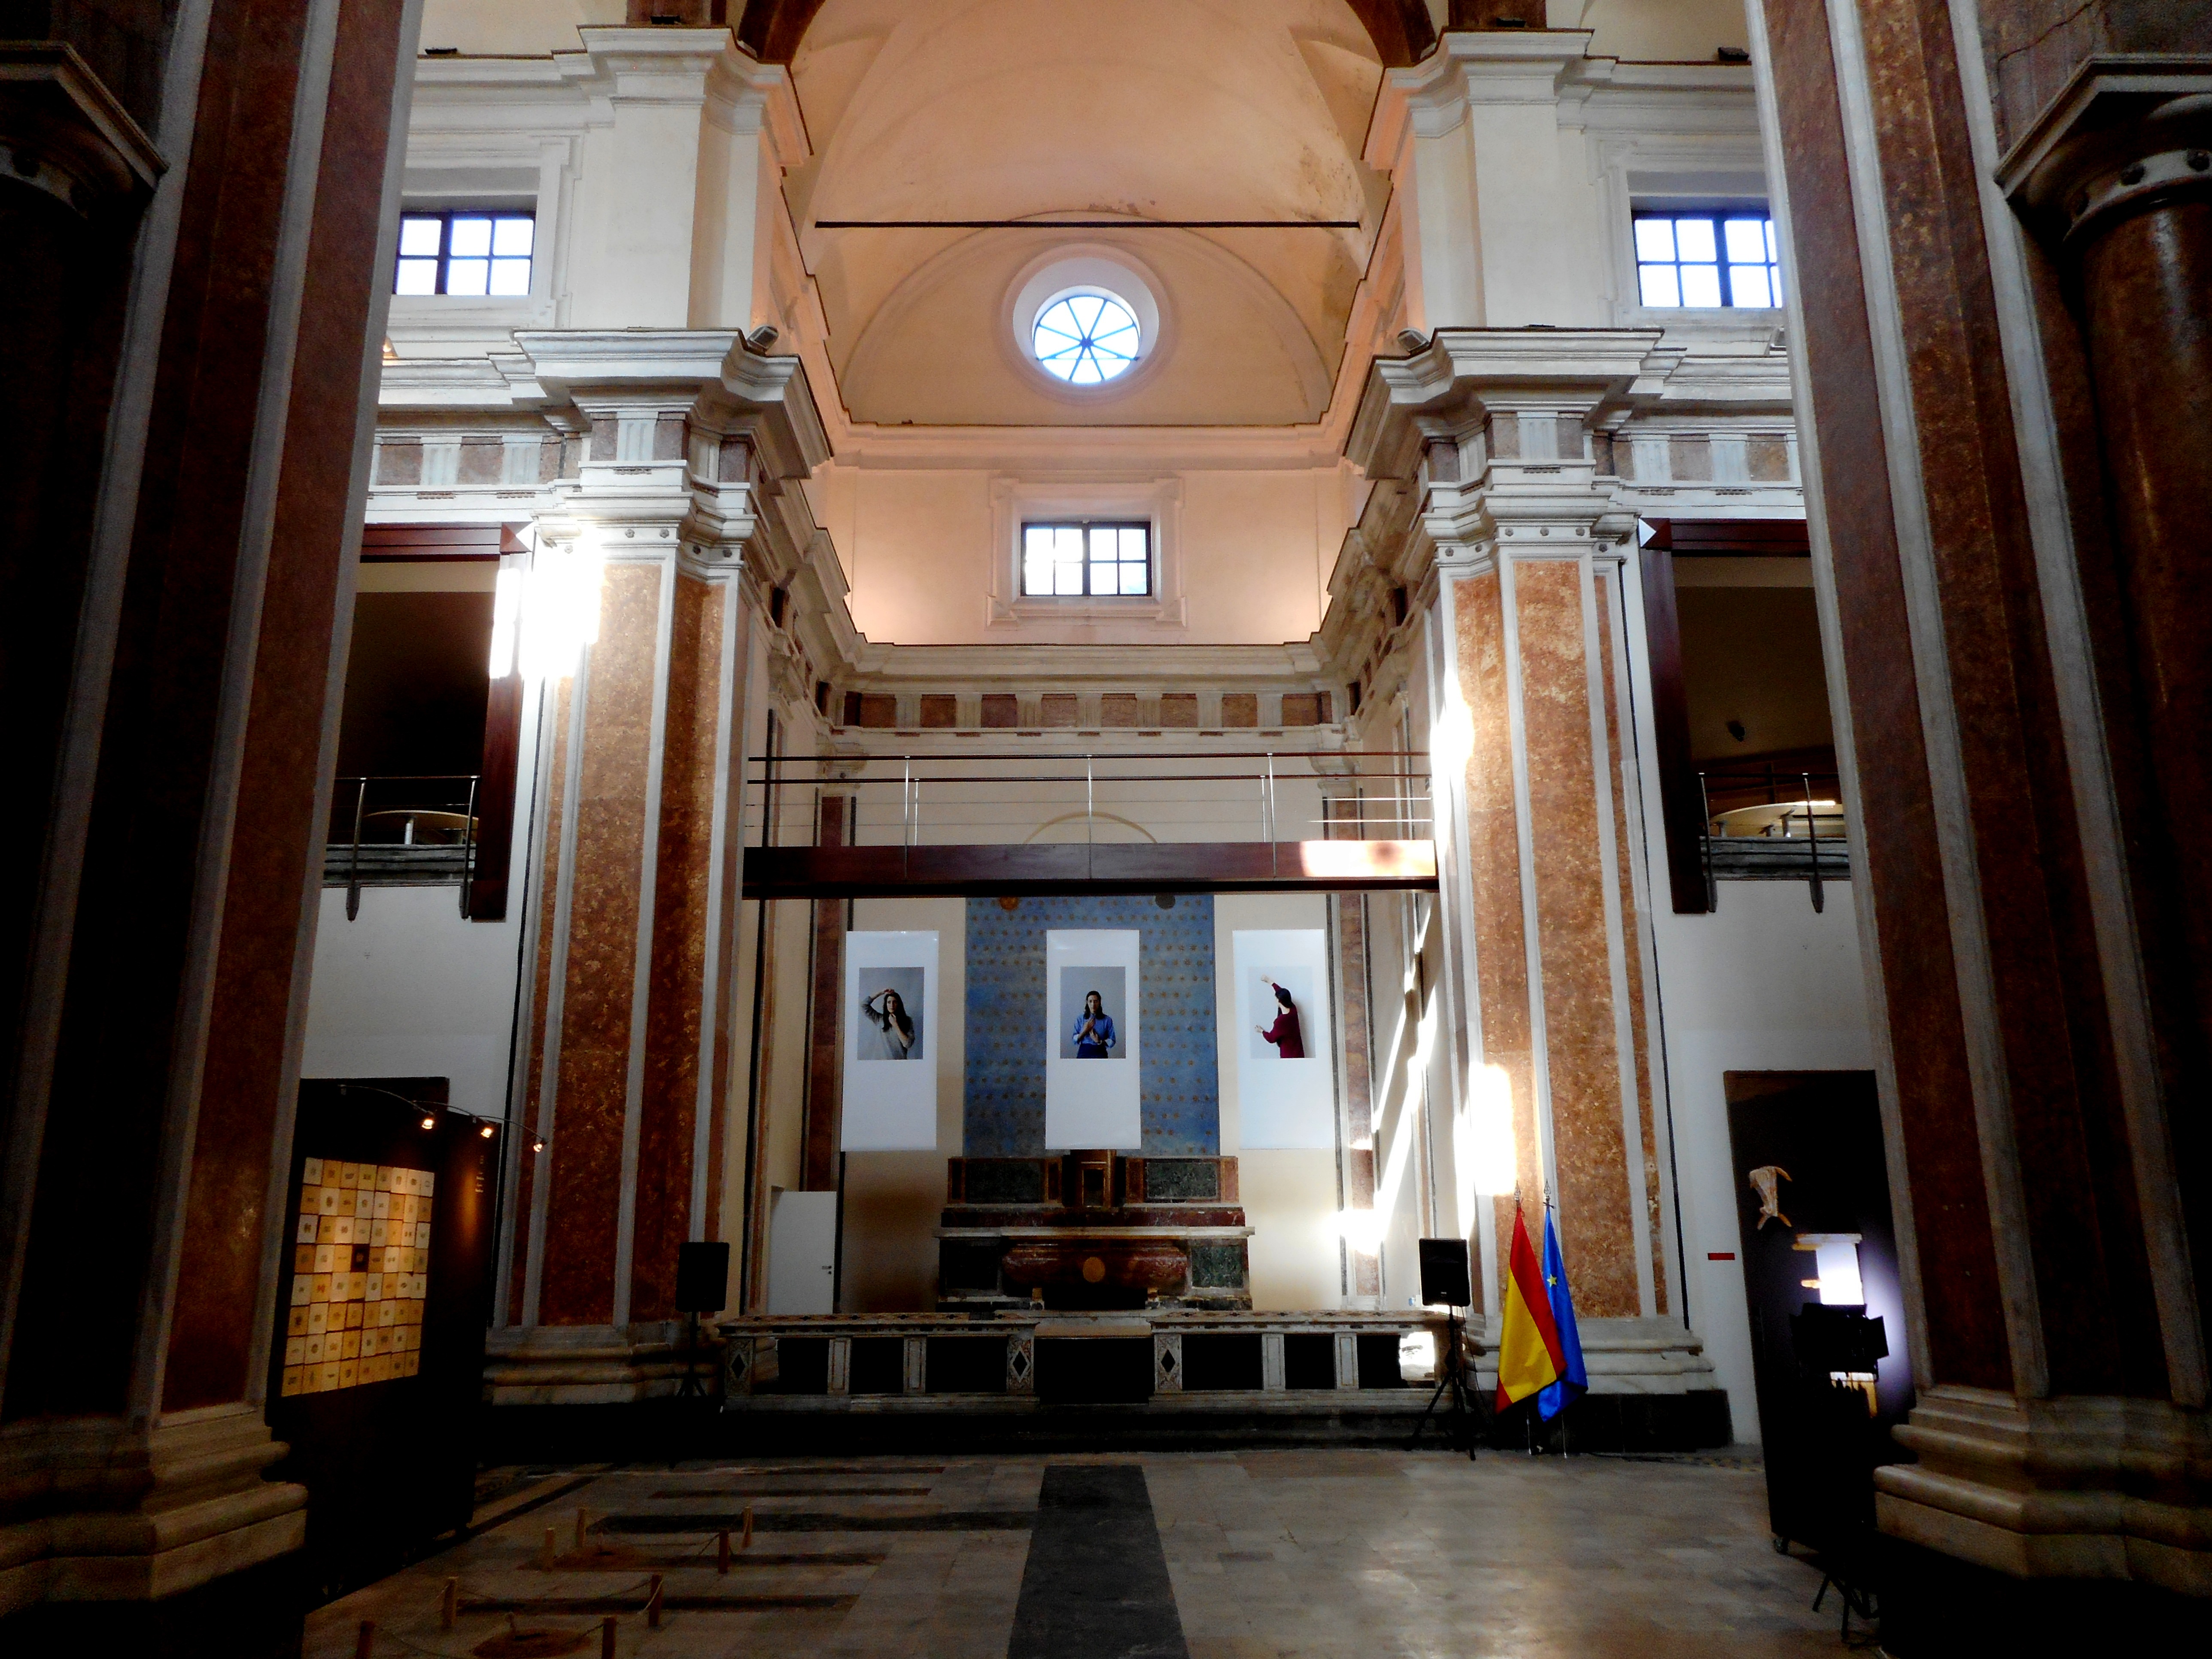 Uno scorcio della navata della chiesa di Santa Eulalia dei Catalani
(Stendhal55, CC BY-SA 4.0 https://creativecommons.org/licenses/by-sa/4.0, via Wikimedia Commons)